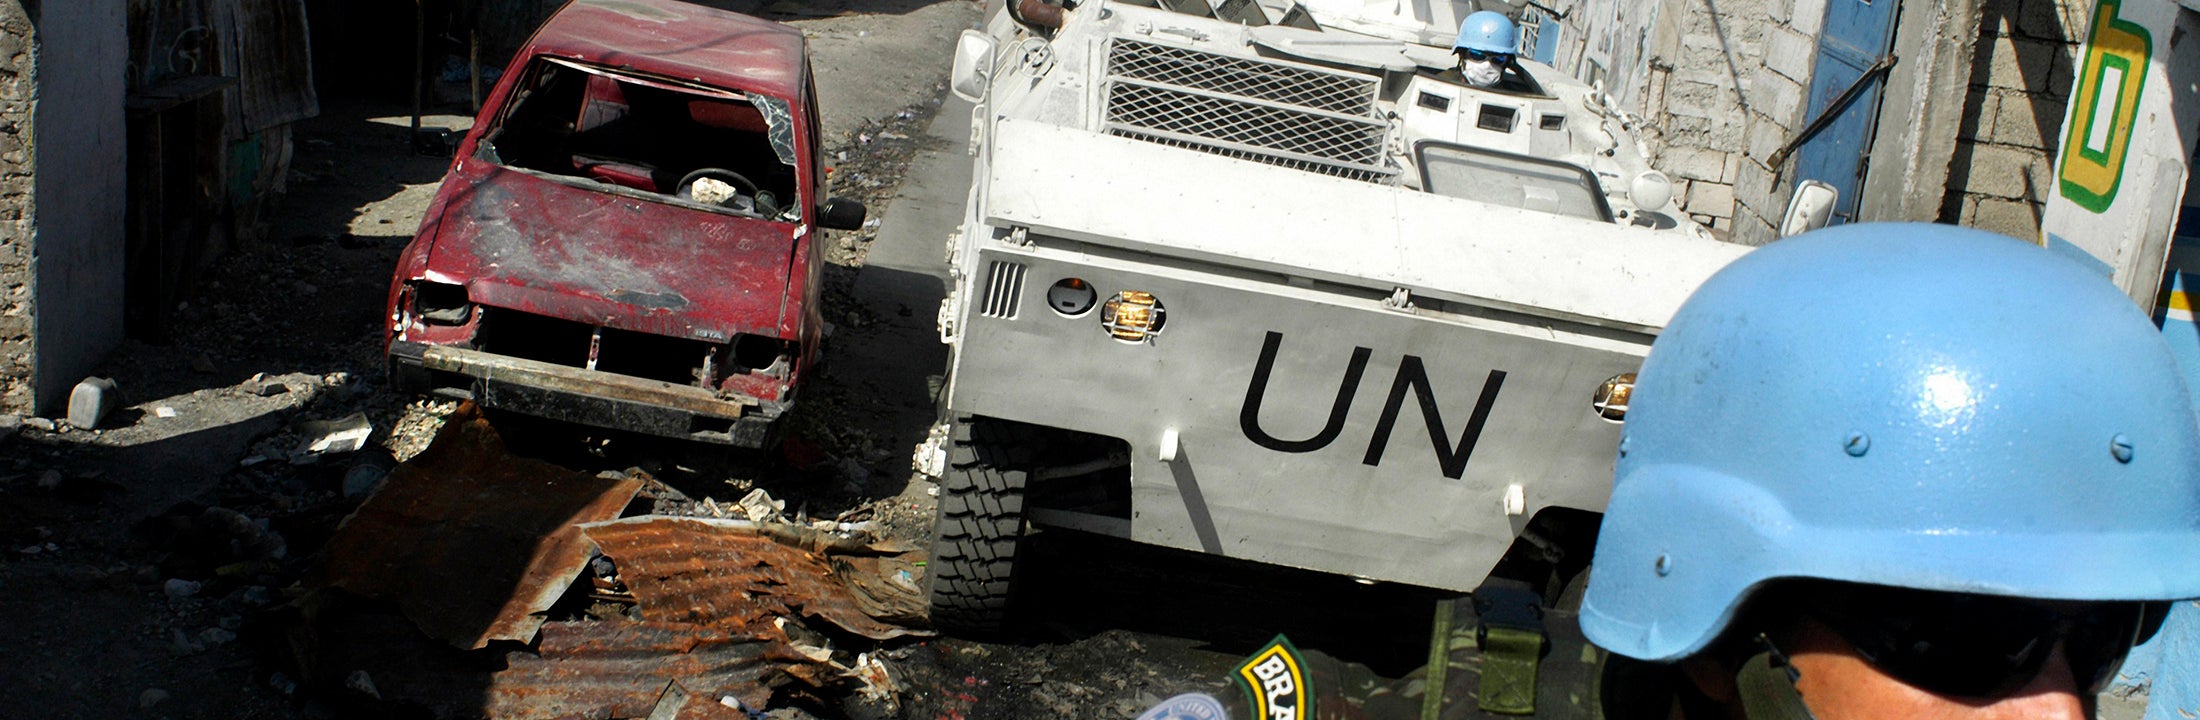 Een blauwhelm soldaat kijkt richting rijdende VN tank